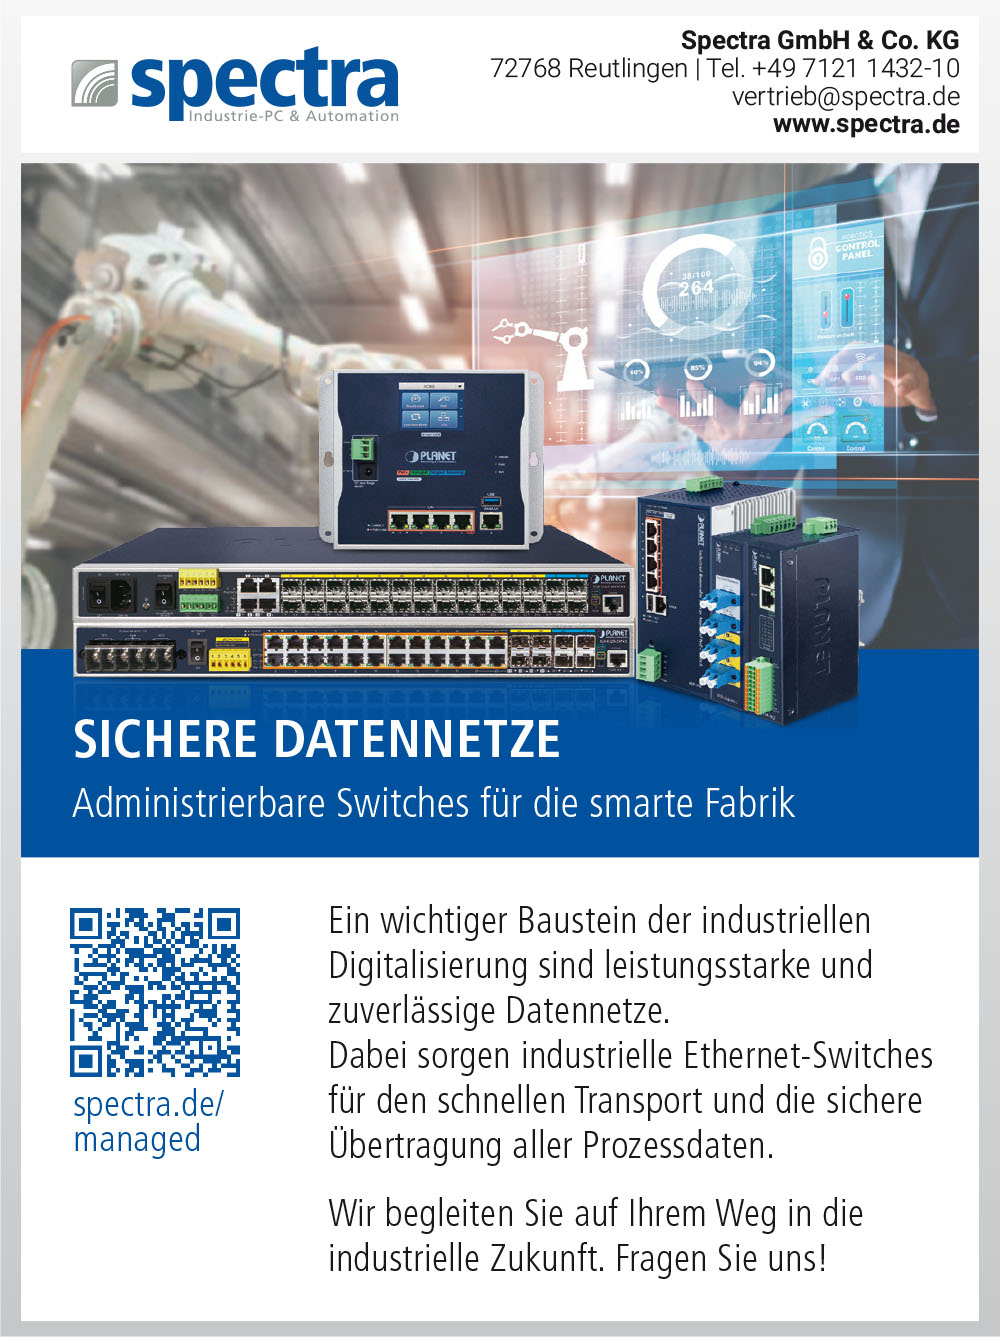 Produktübersicht – Spectra GmbH & Co. KG